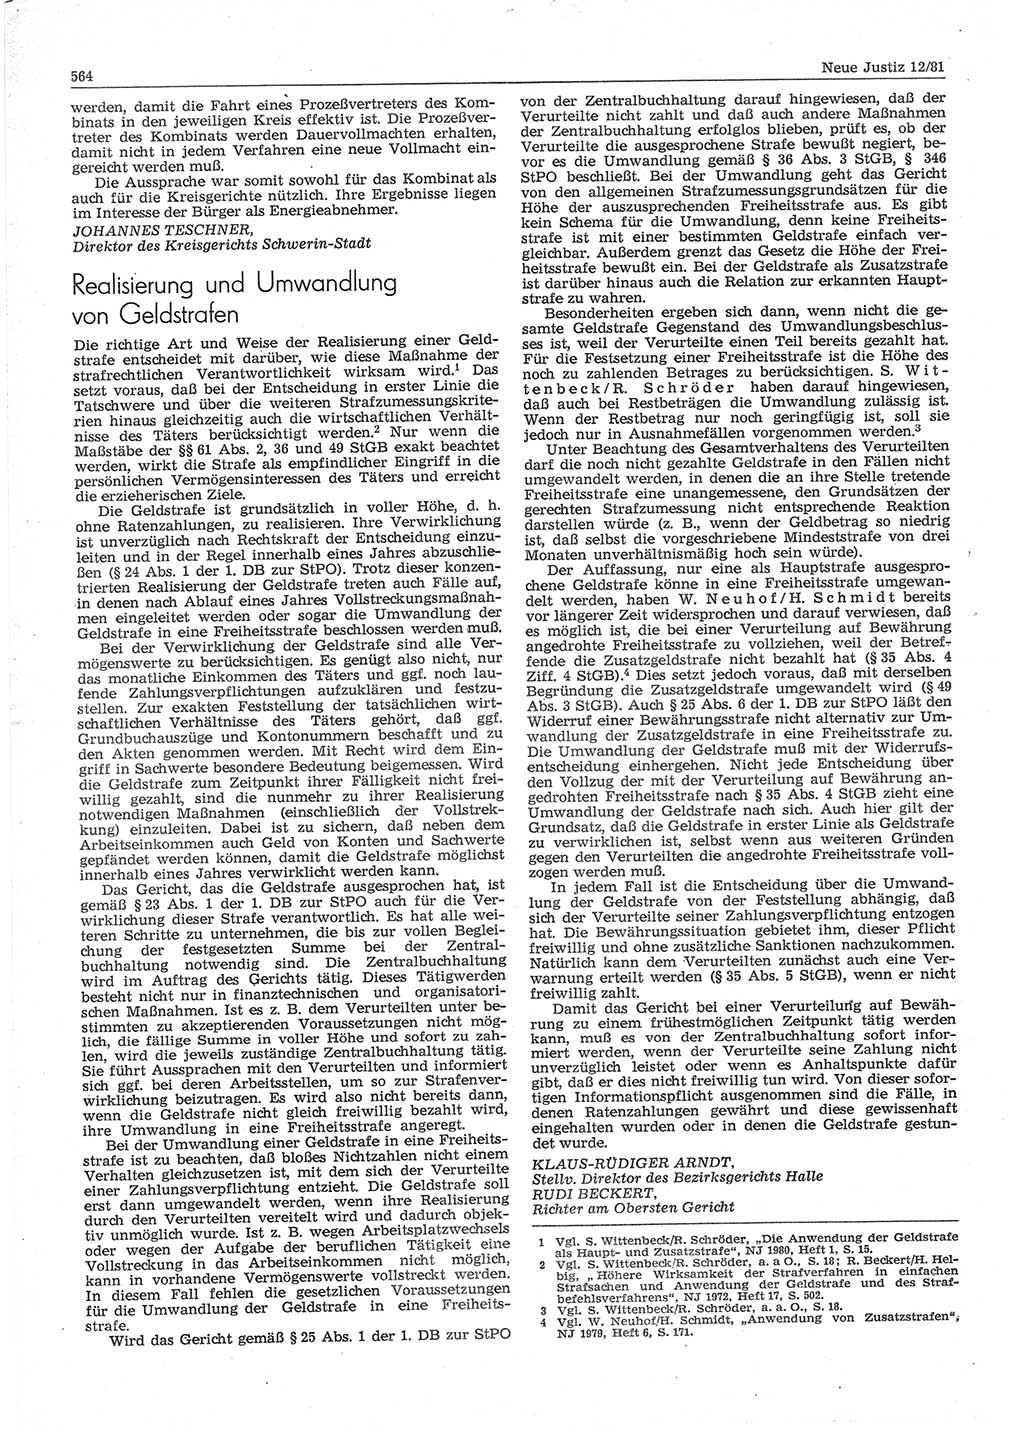 Neue Justiz (NJ), Zeitschrift für sozialistisches Recht und Gesetzlichkeit [Deutsche Demokratische Republik (DDR)], 35. Jahrgang 1981, Seite 564 (NJ DDR 1981, S. 564)